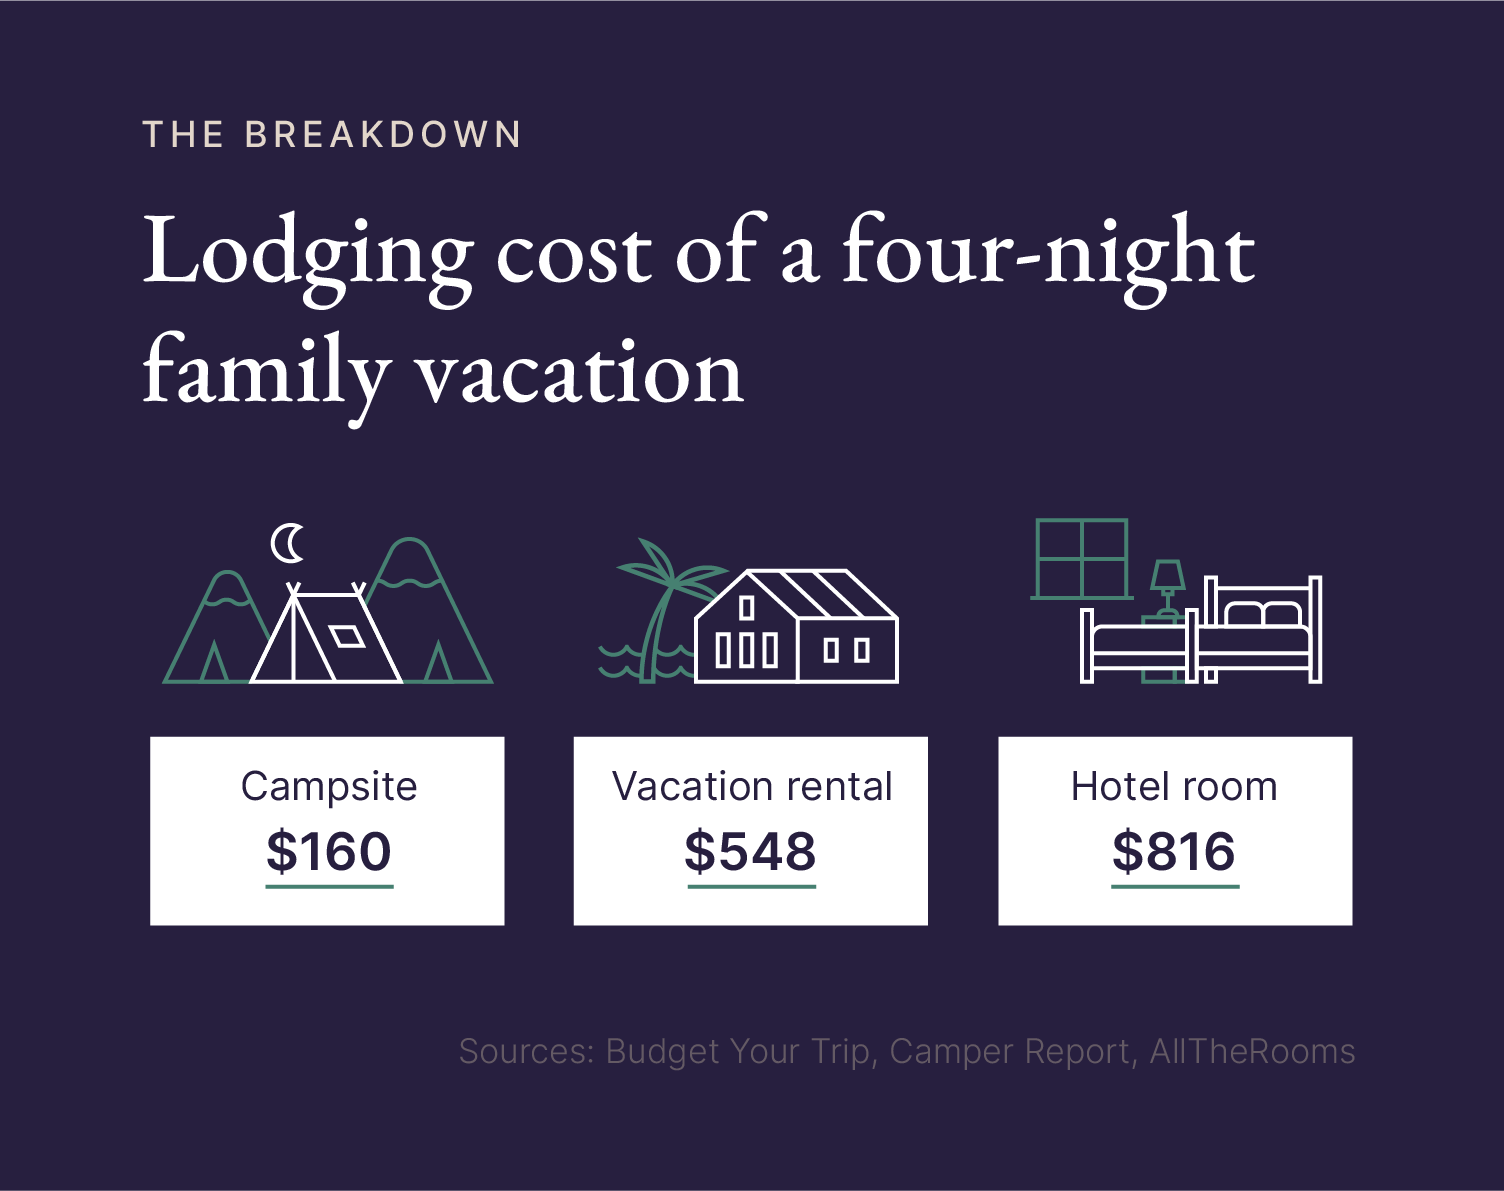 Hong Kong Travel Cost - Average Price of a Vacation to Hong Kong